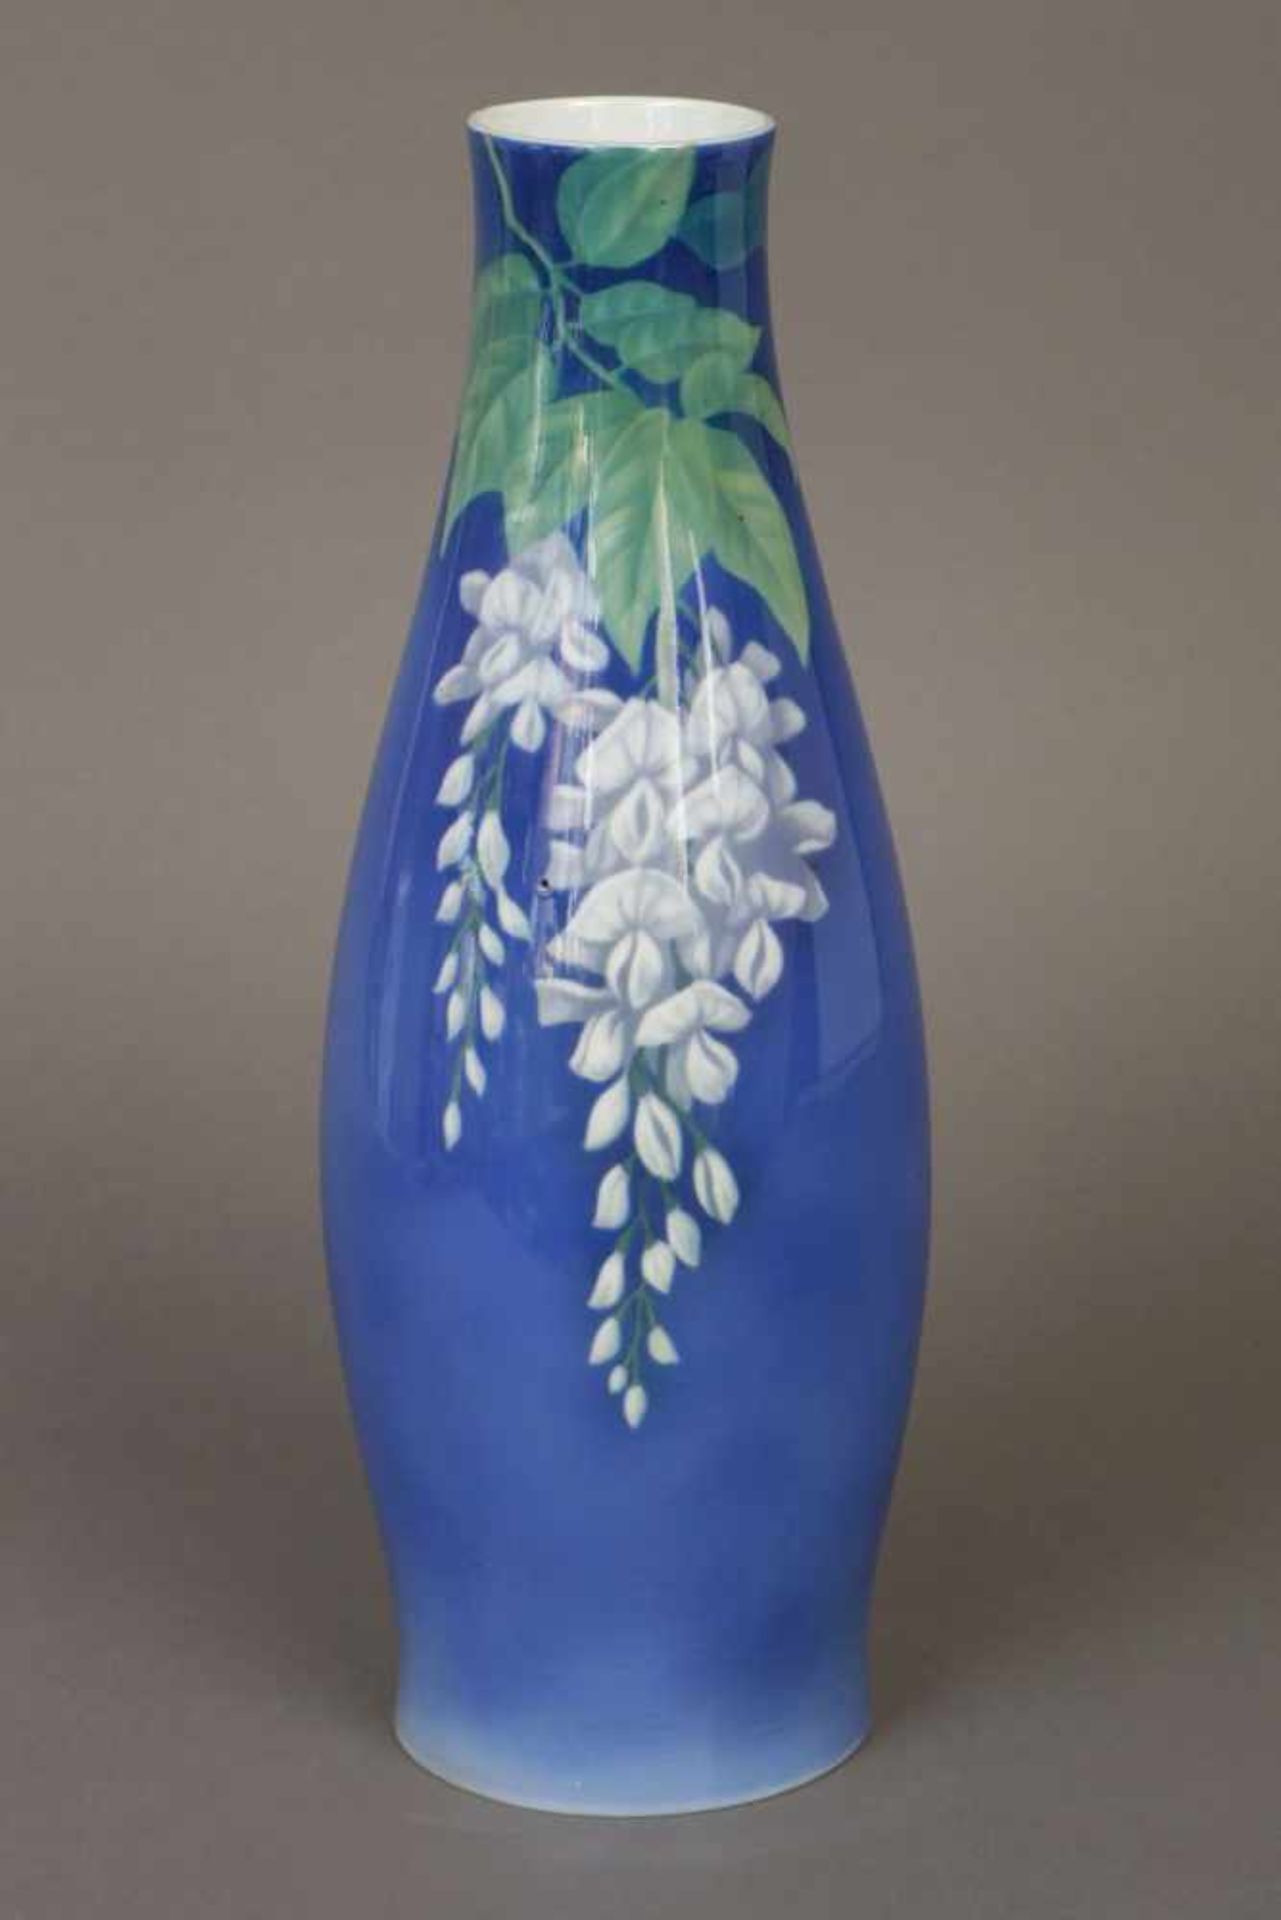 FRAUREUTH (Kunstabteilung) VasePorzellan, blau glasiert, um 1920, keulenförmiger Korpus, schauseitig